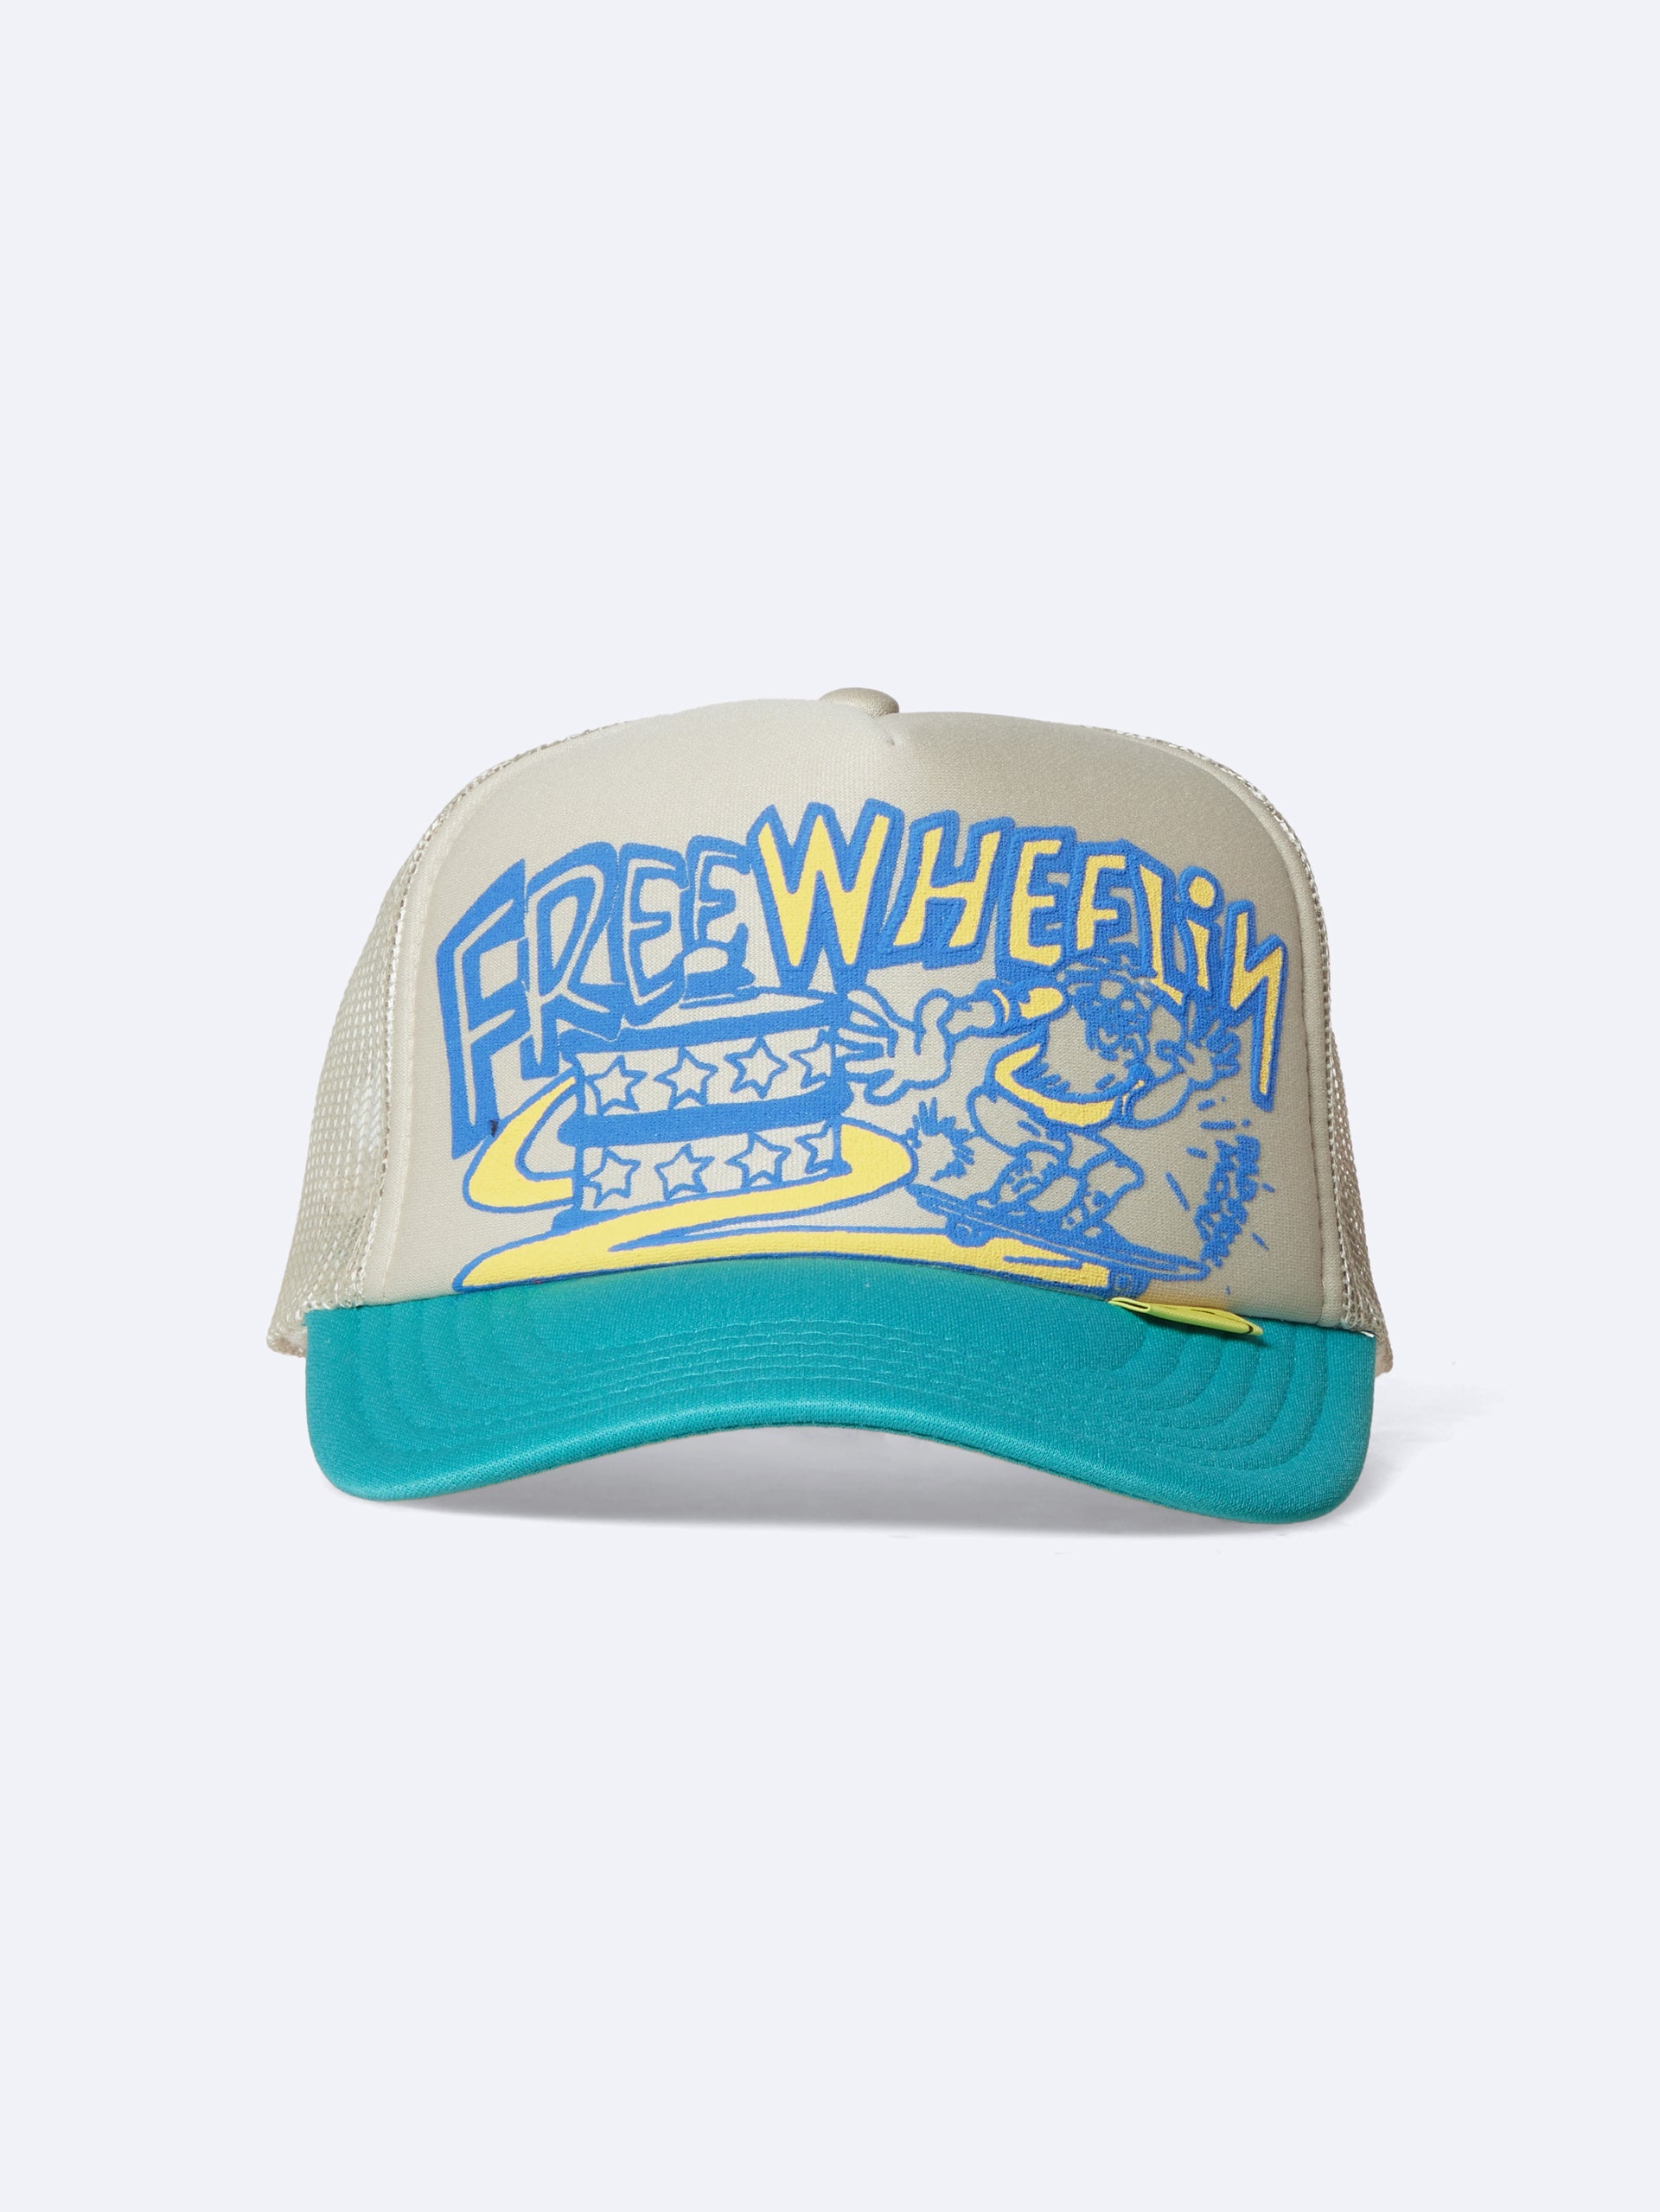 FREE WHEELIN' Trucker Cap (Beige/Turquoise)